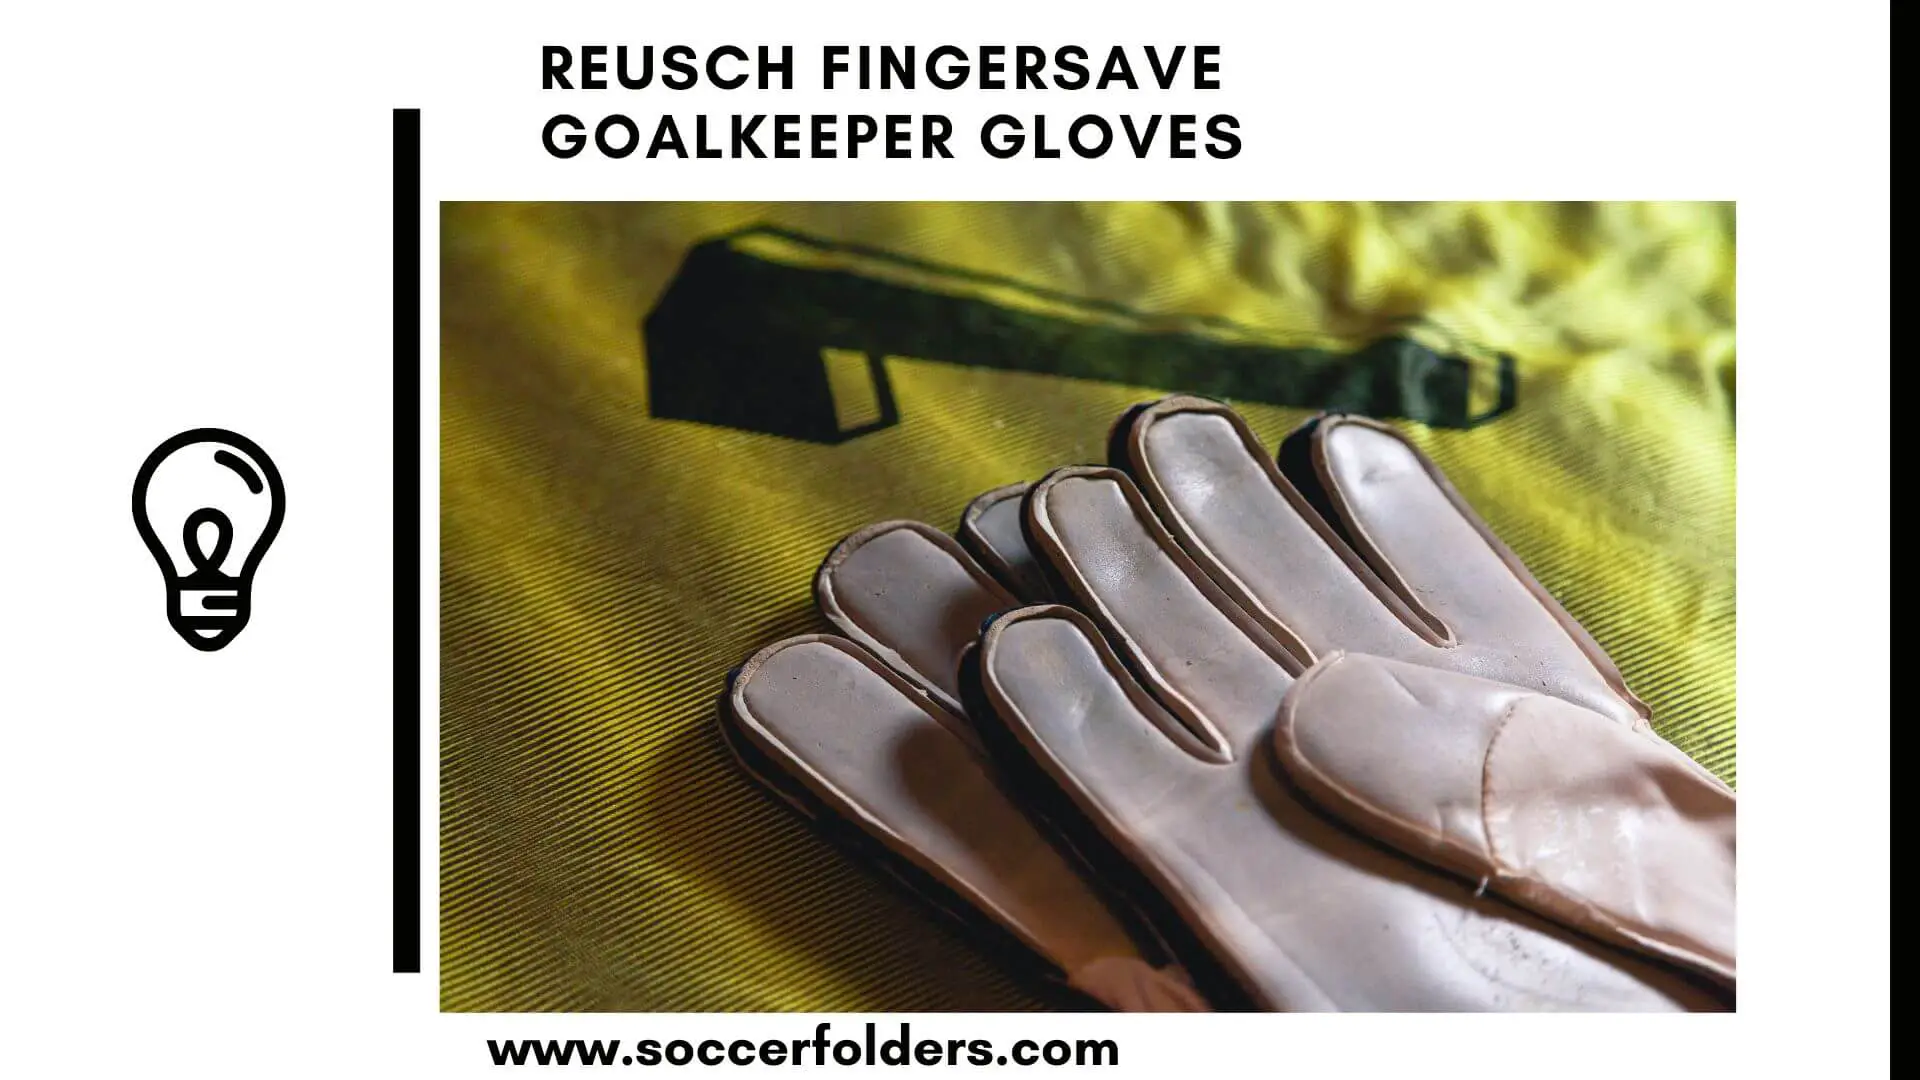 Reusch Fingersave goalkeeper gloves - Featured Image